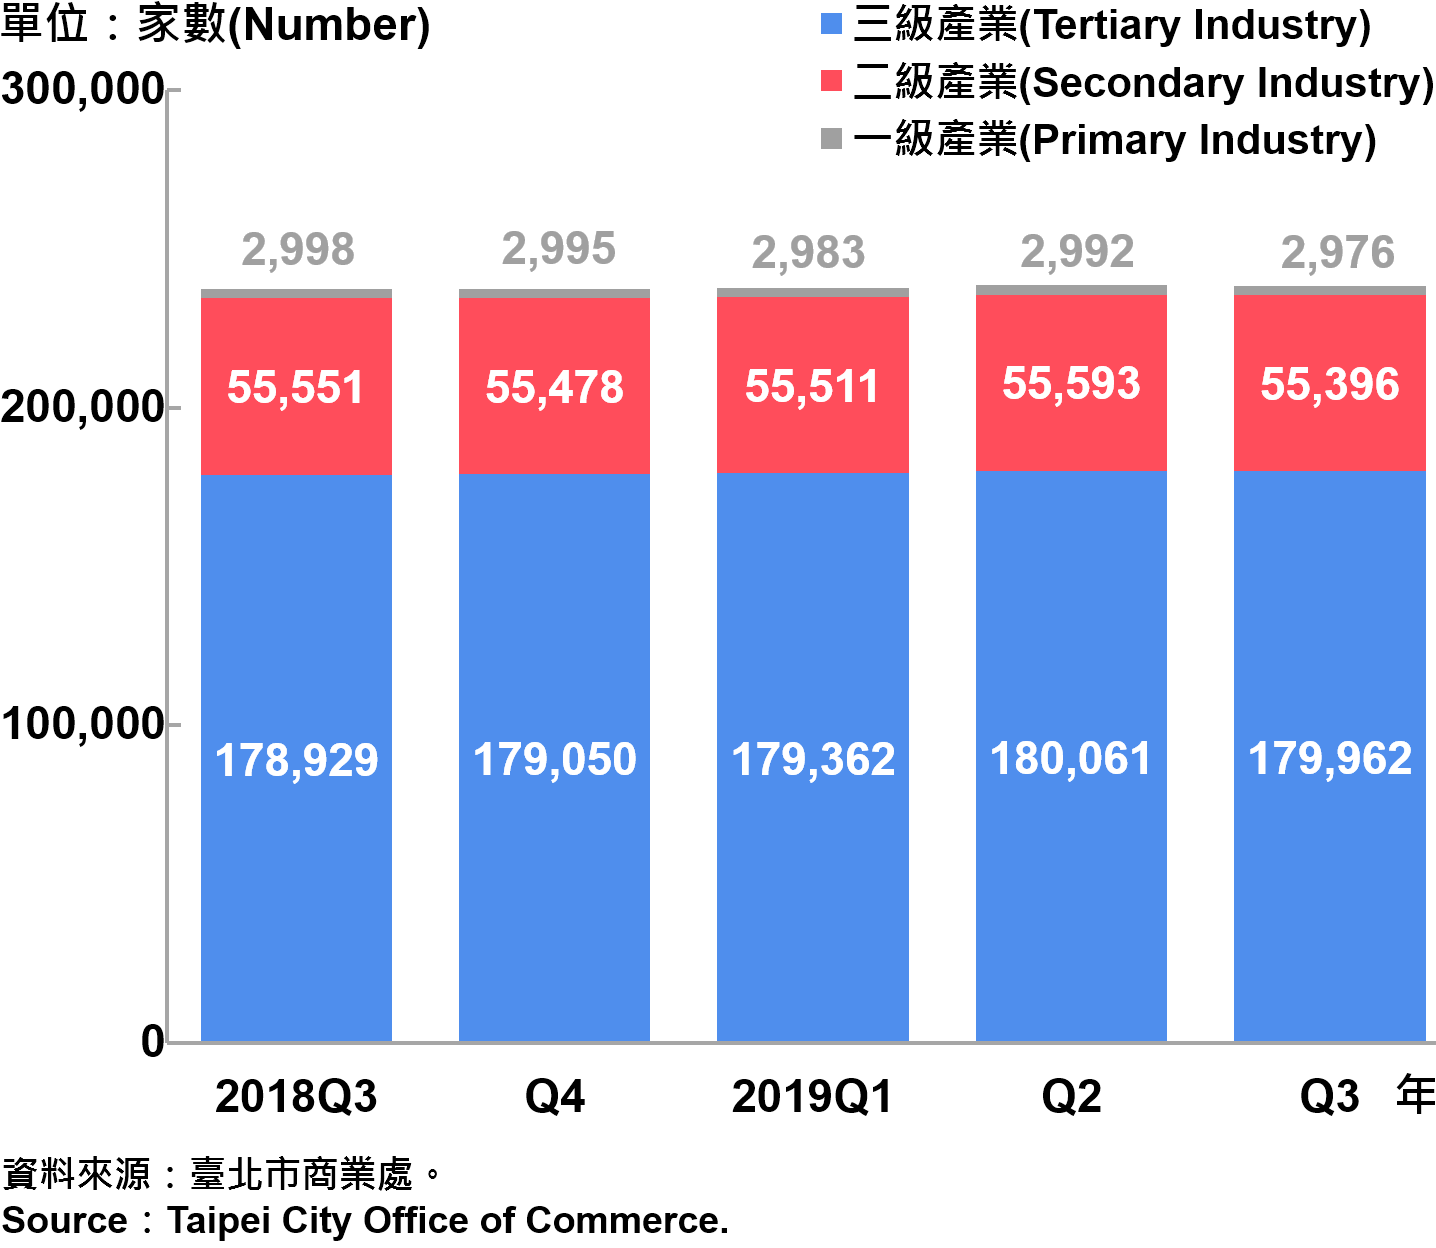 臺北市一二三級產業登記家數—2019Q3 Number of Primary , Secondary and Tertiary Industry in Taipei City—2019Q3